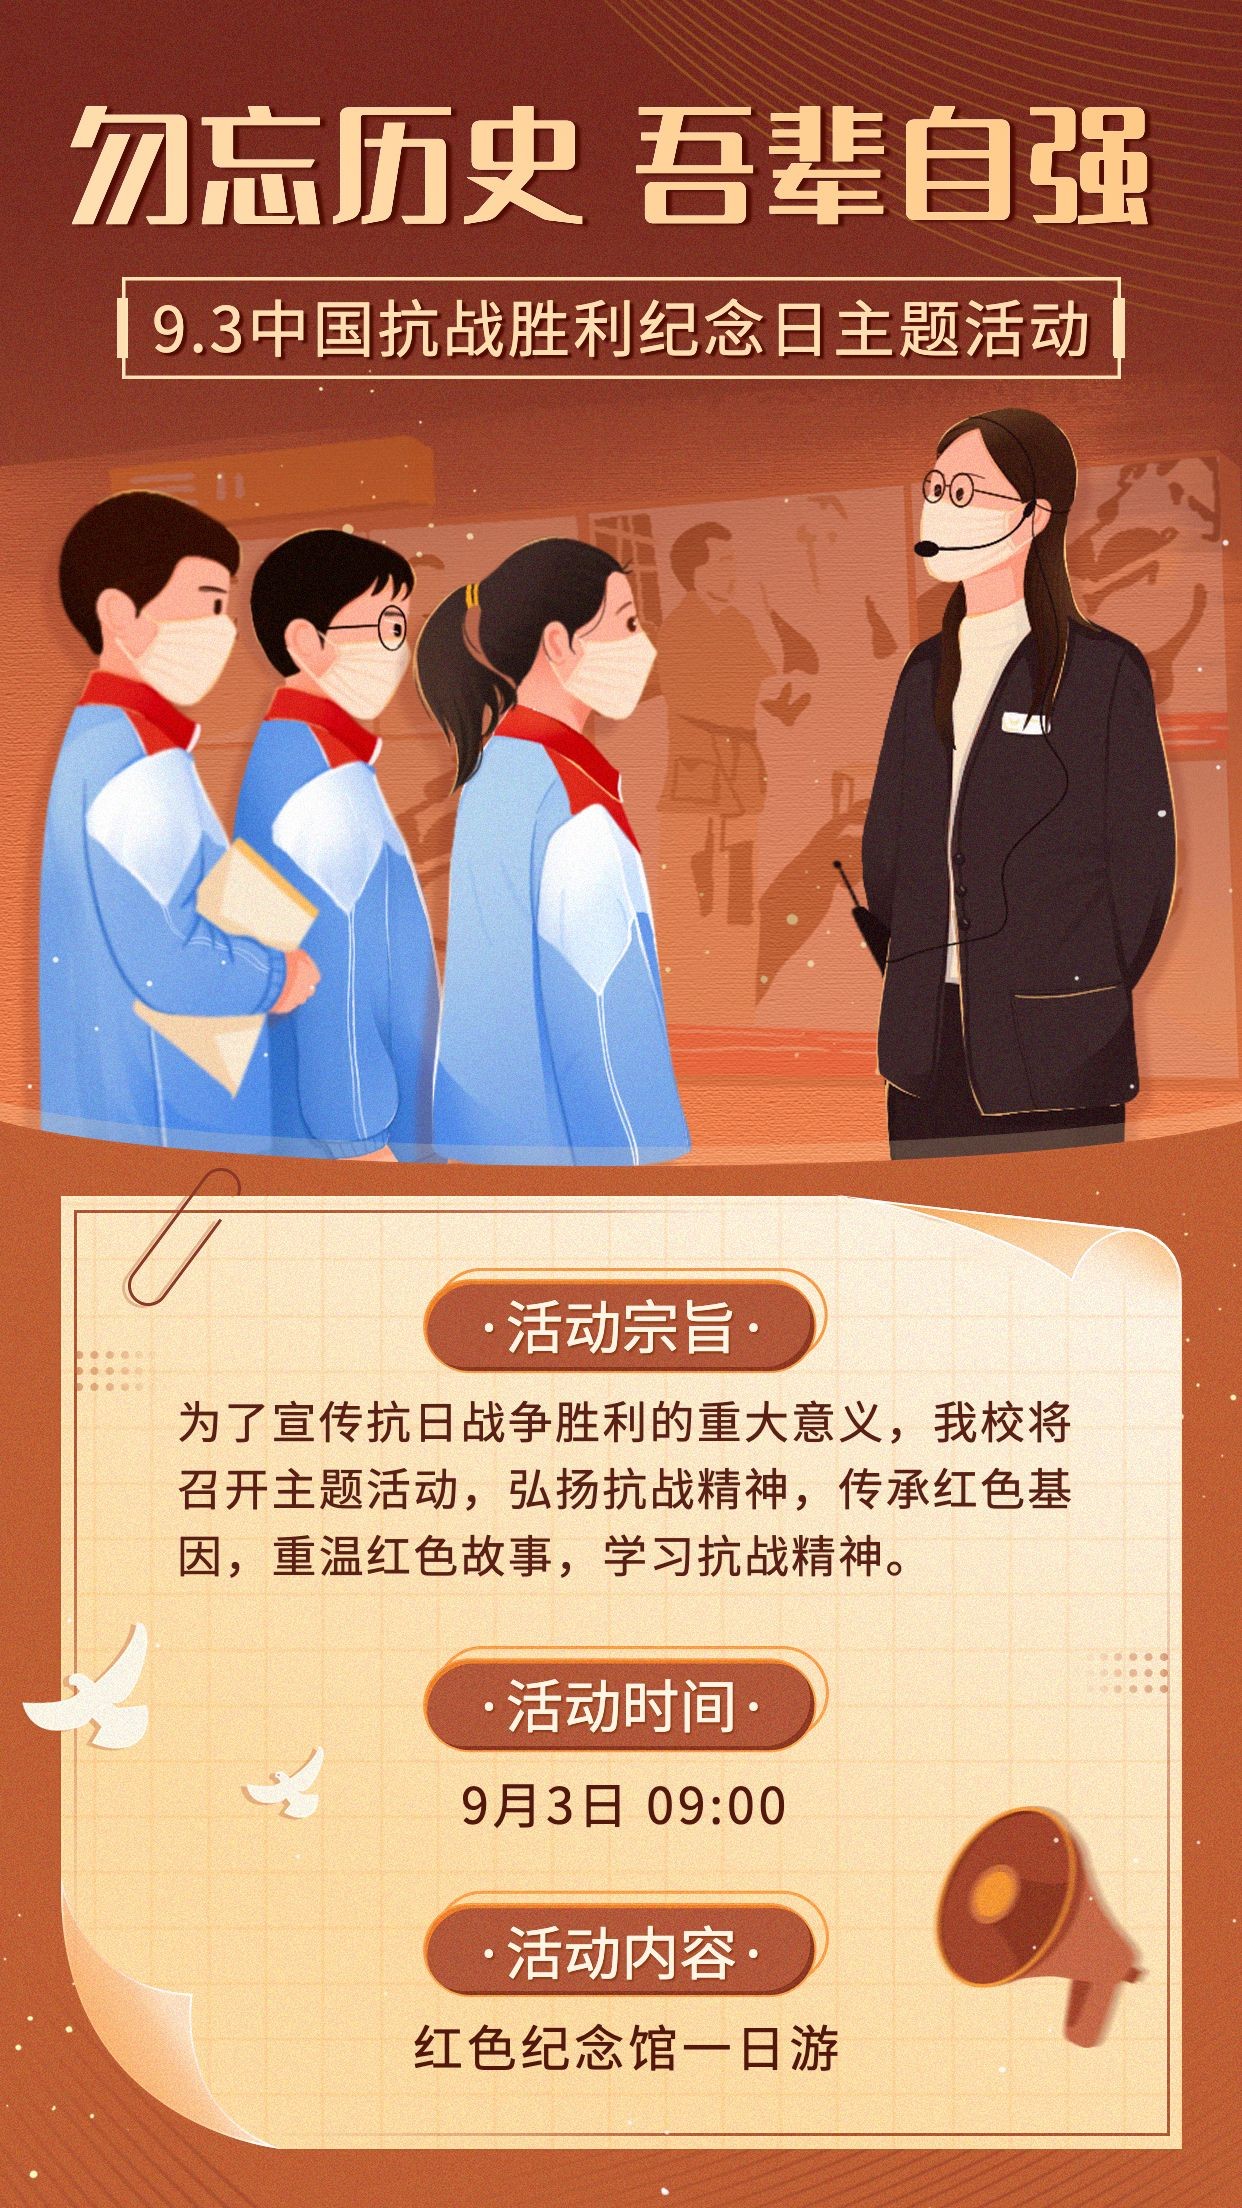 中国抗战胜利纪念日主题活动手绘手机海报预览效果